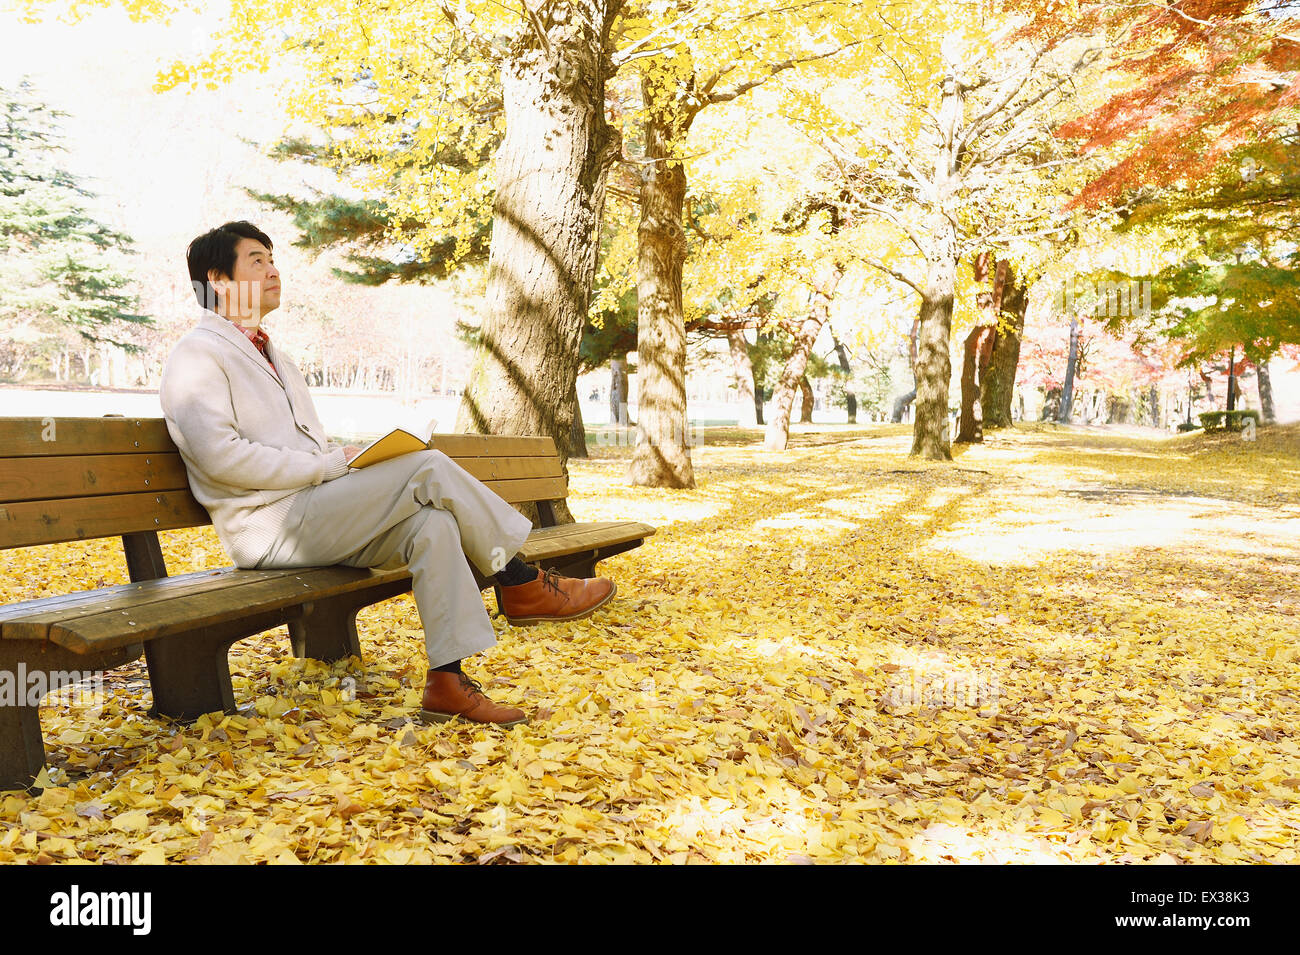 Hauts homme japonais assis sur un banc avec un livre dans un parc de la ville à l'automne Banque D'Images